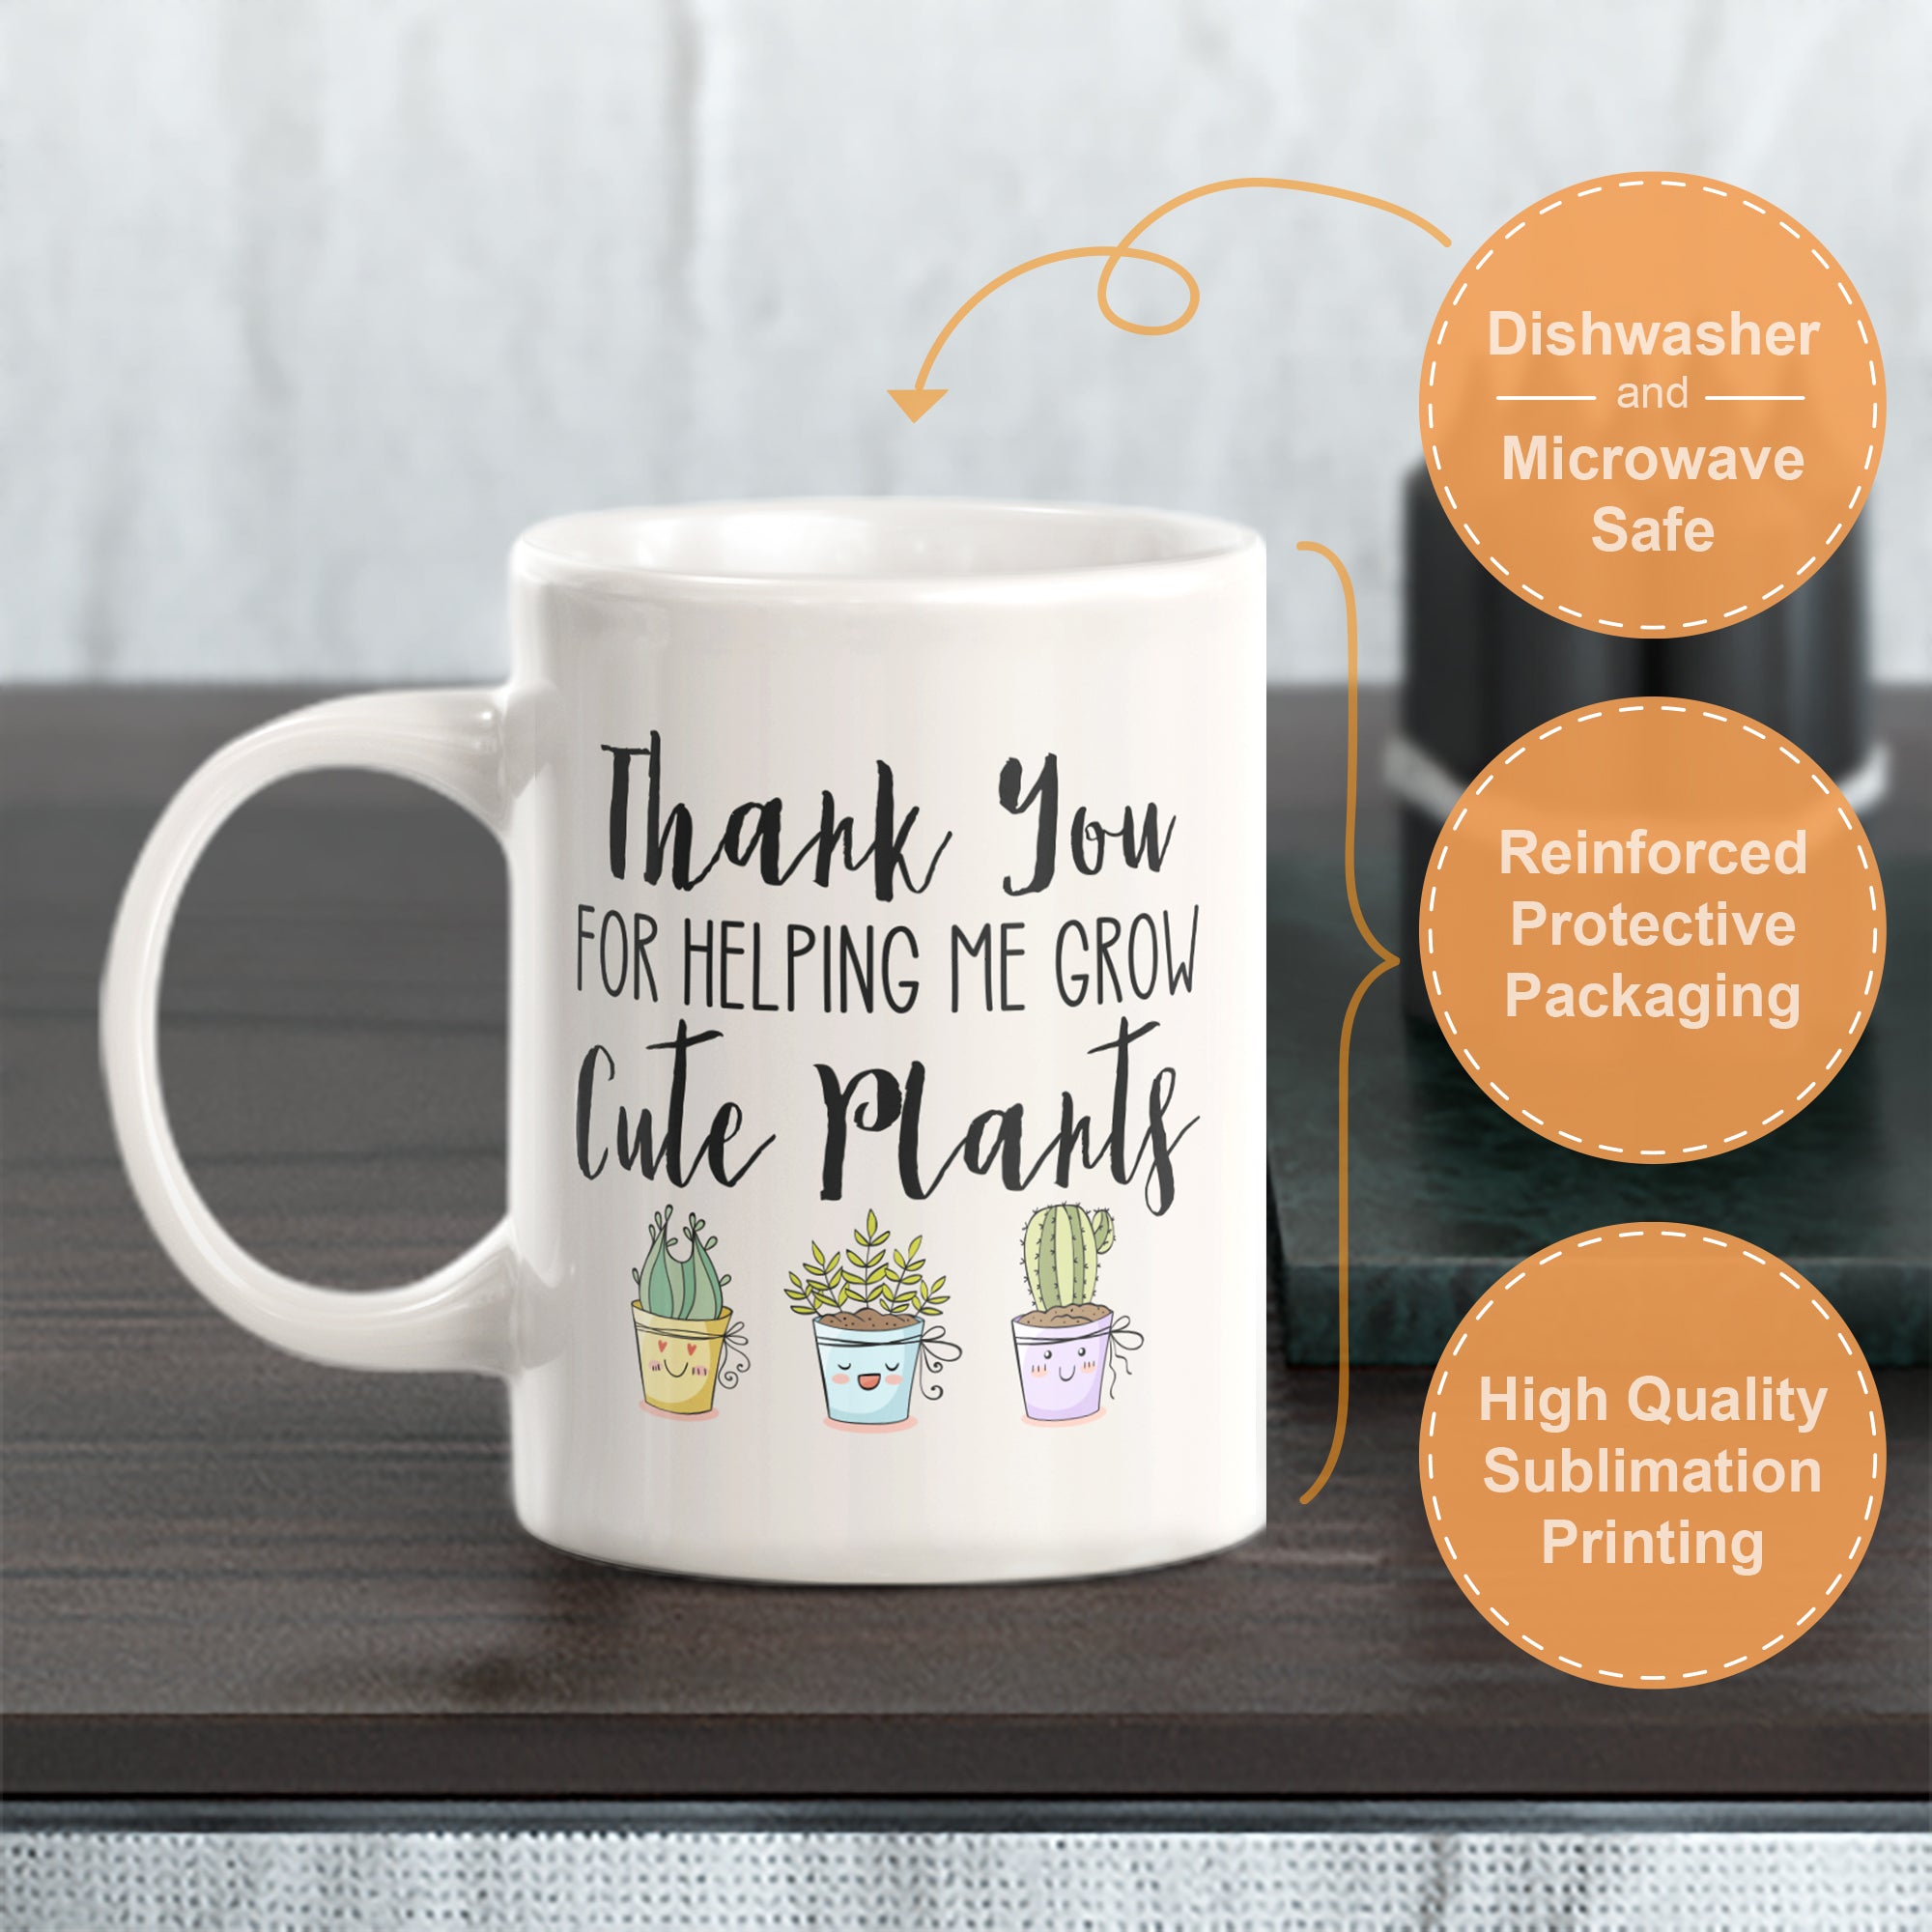 Thank You For Helping Me Grow Coffee Mug